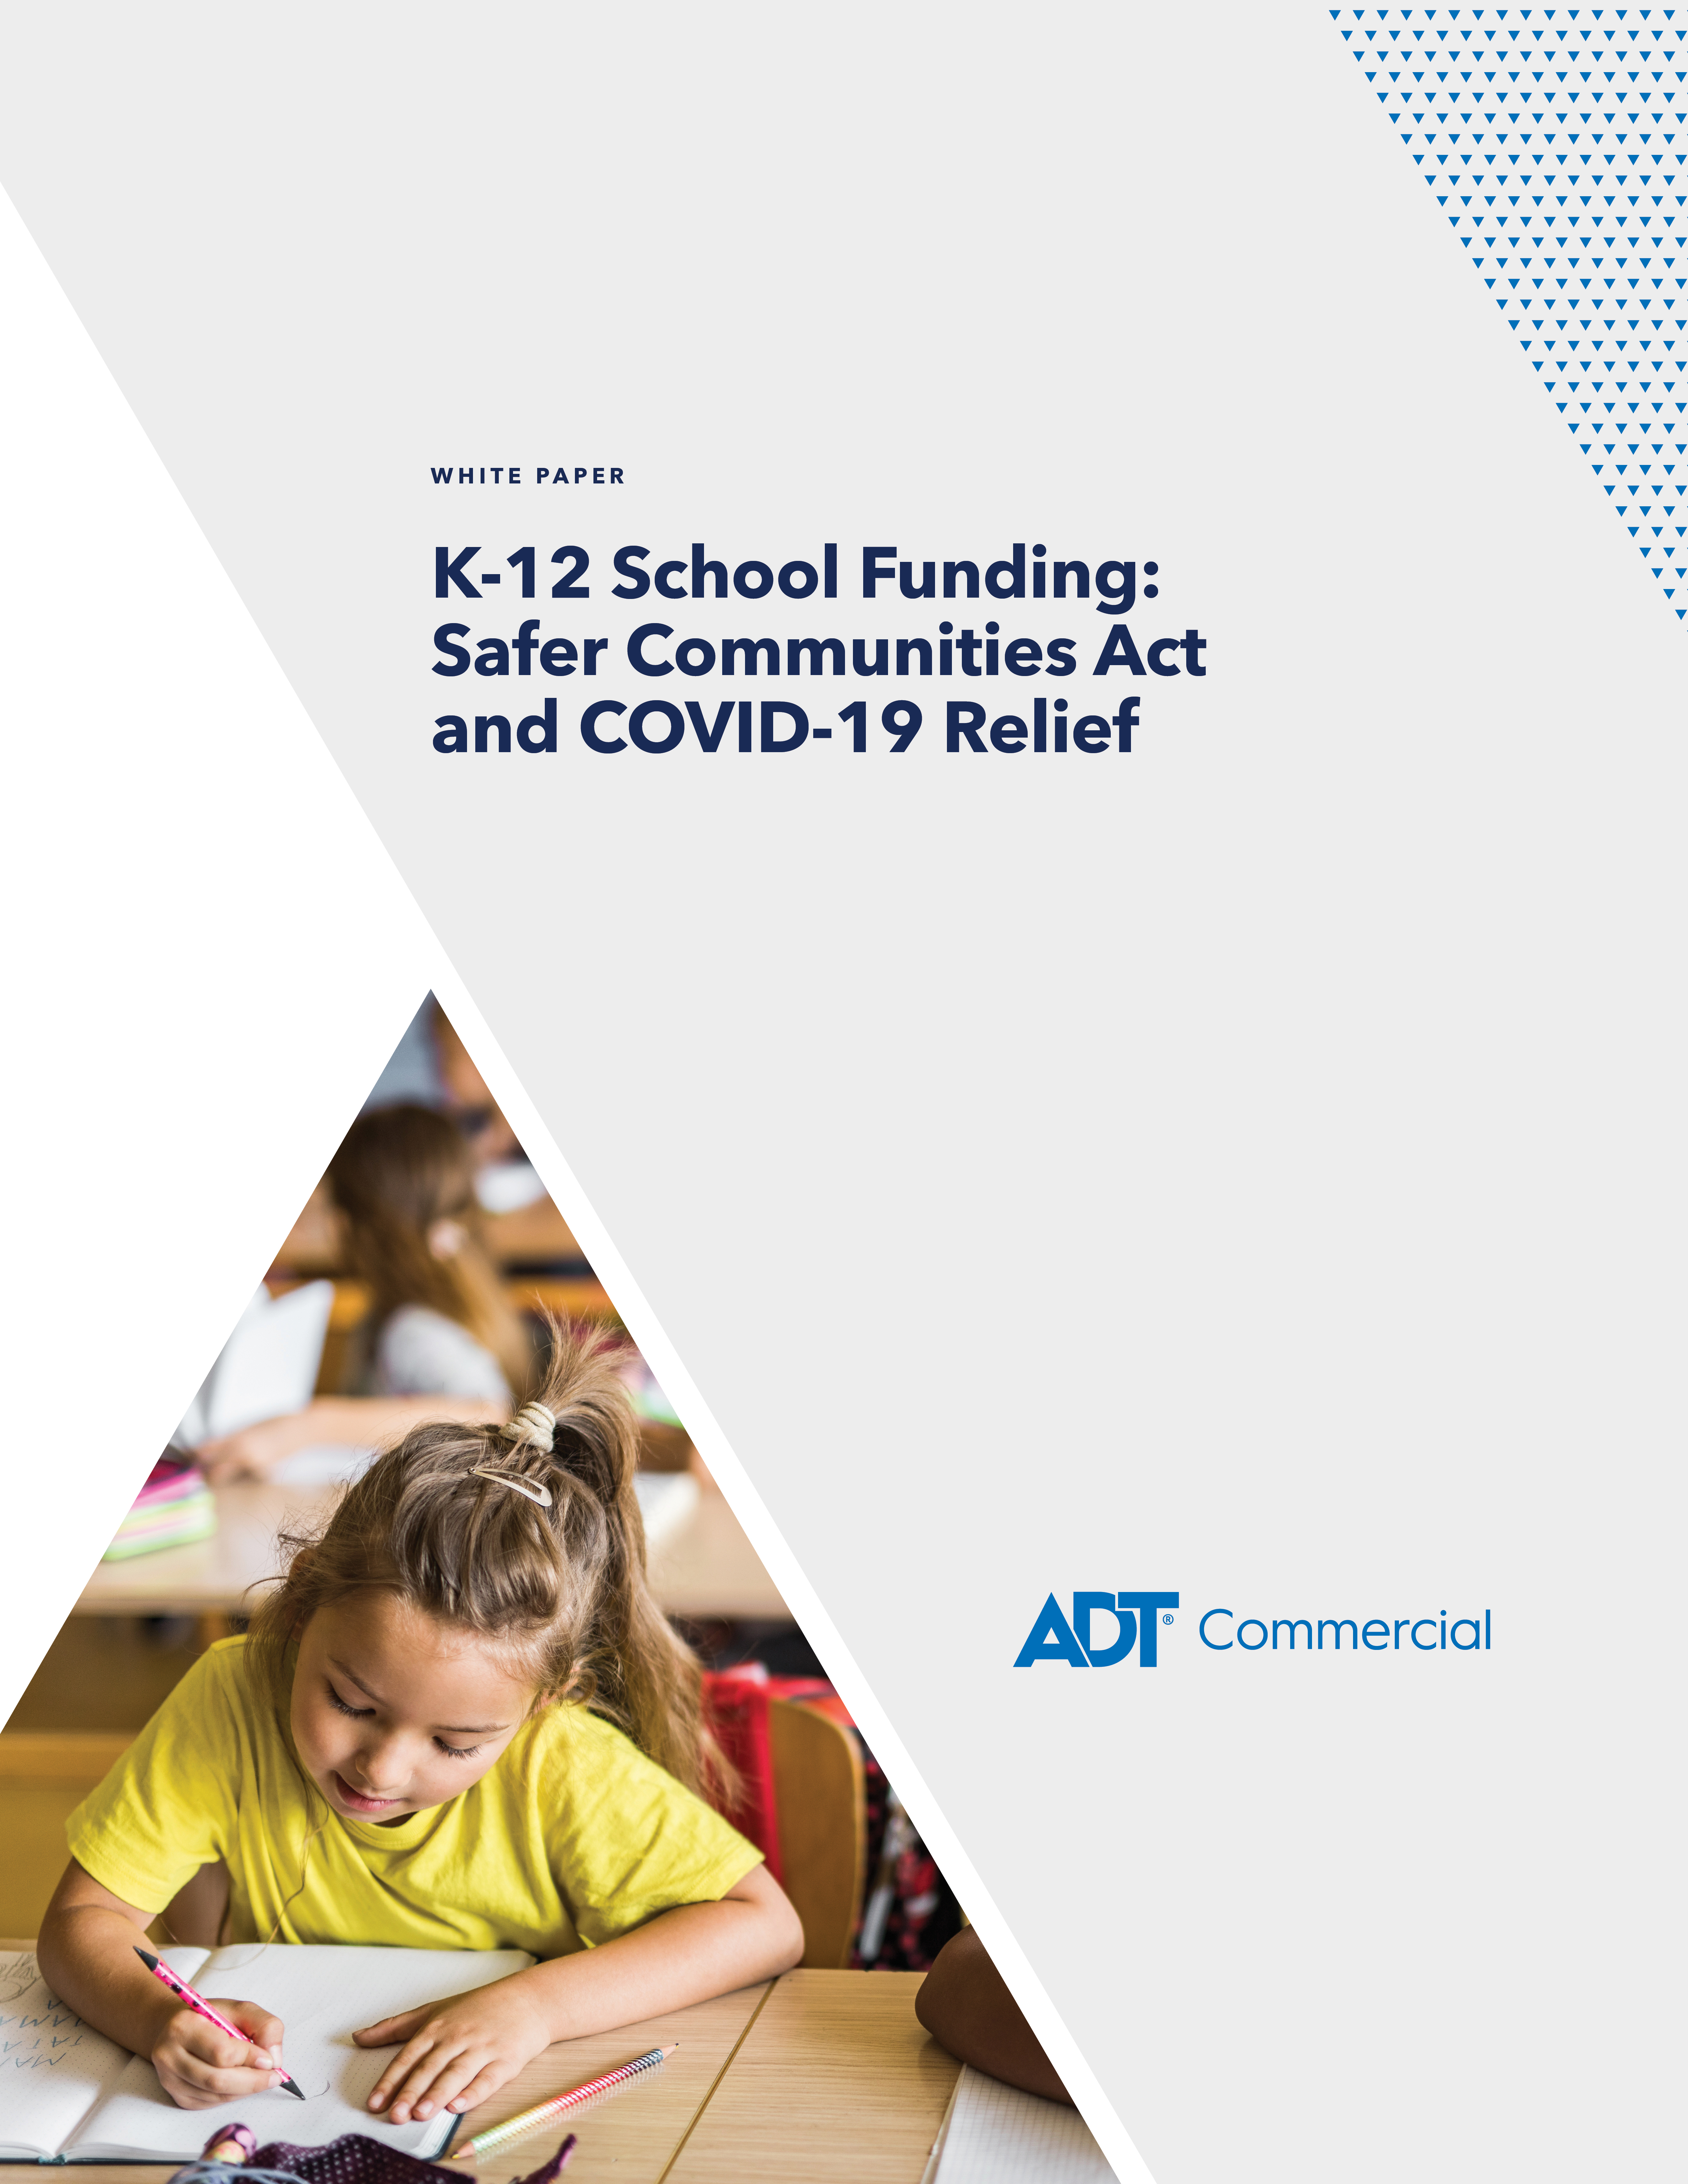 K-12 School Funding White Paper